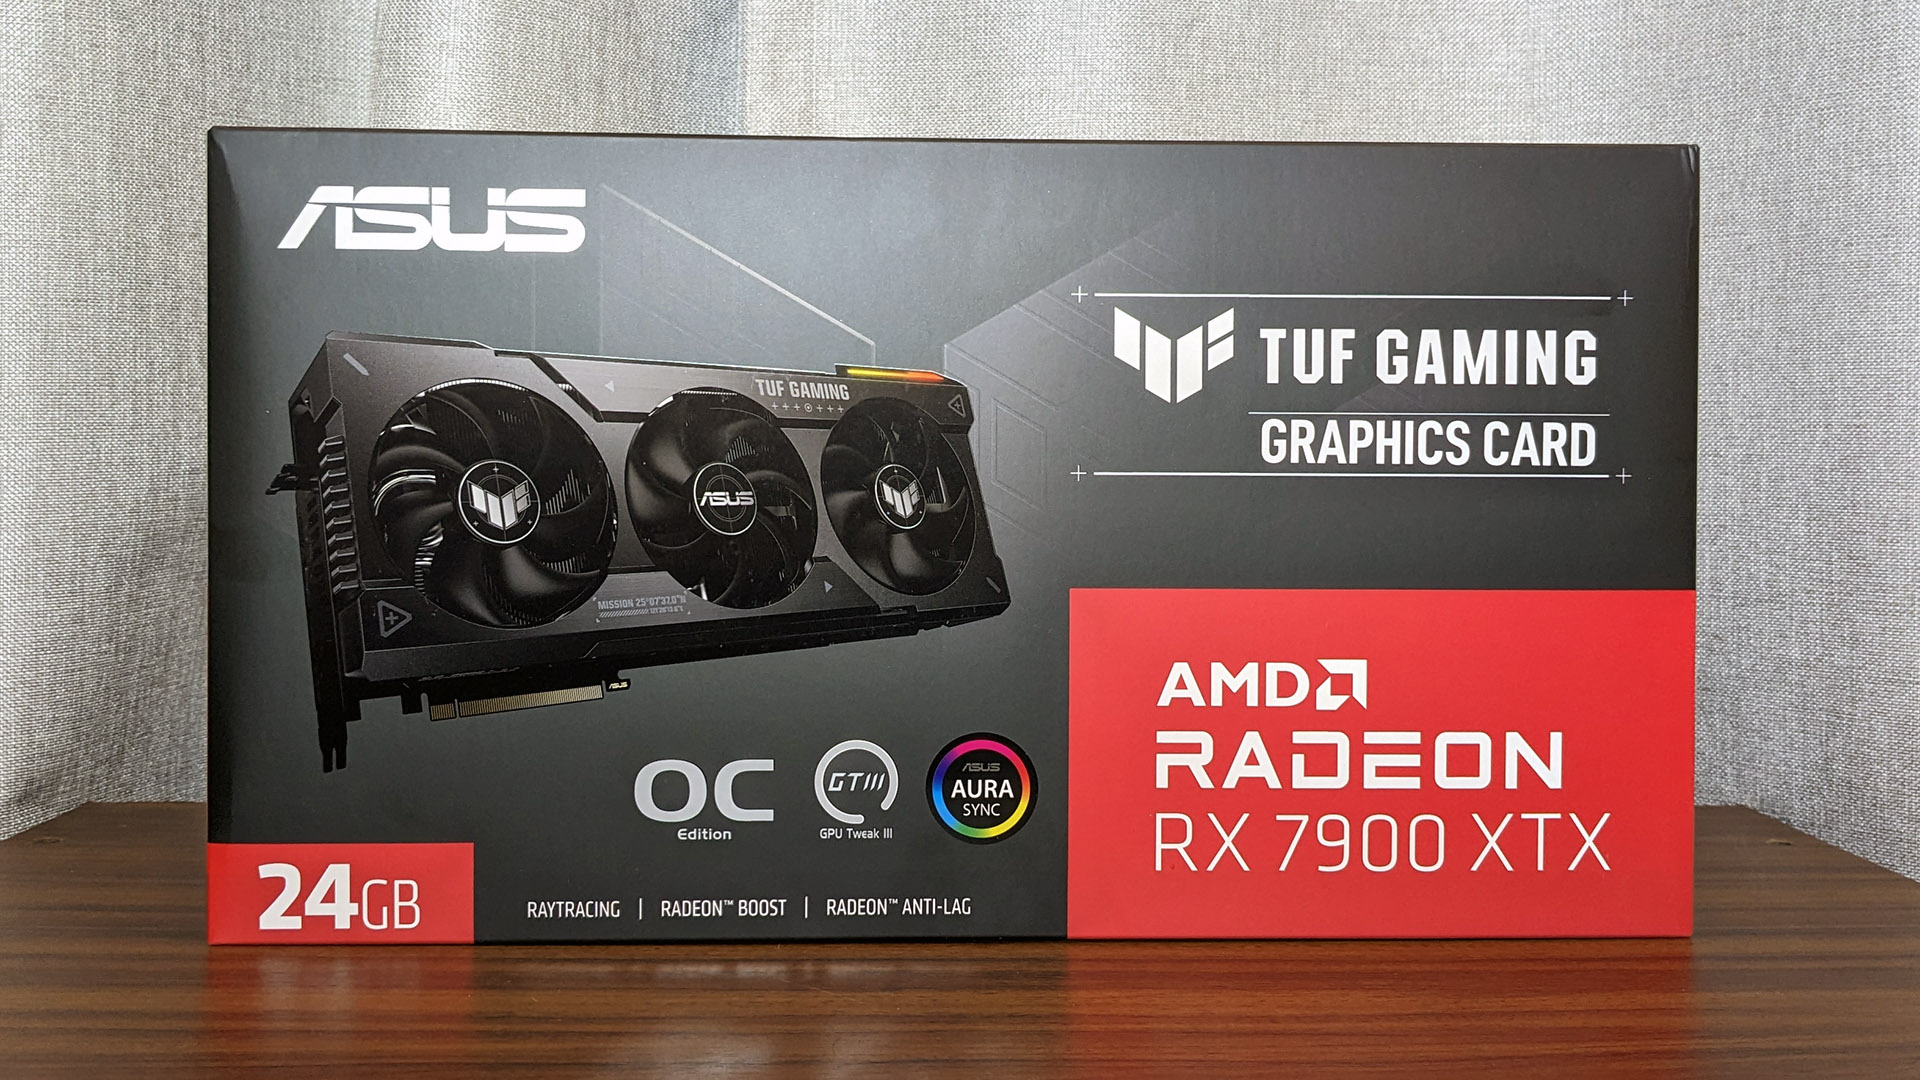 Asus TUF Gaming Radeon RX 7900 XTX OC Edition box